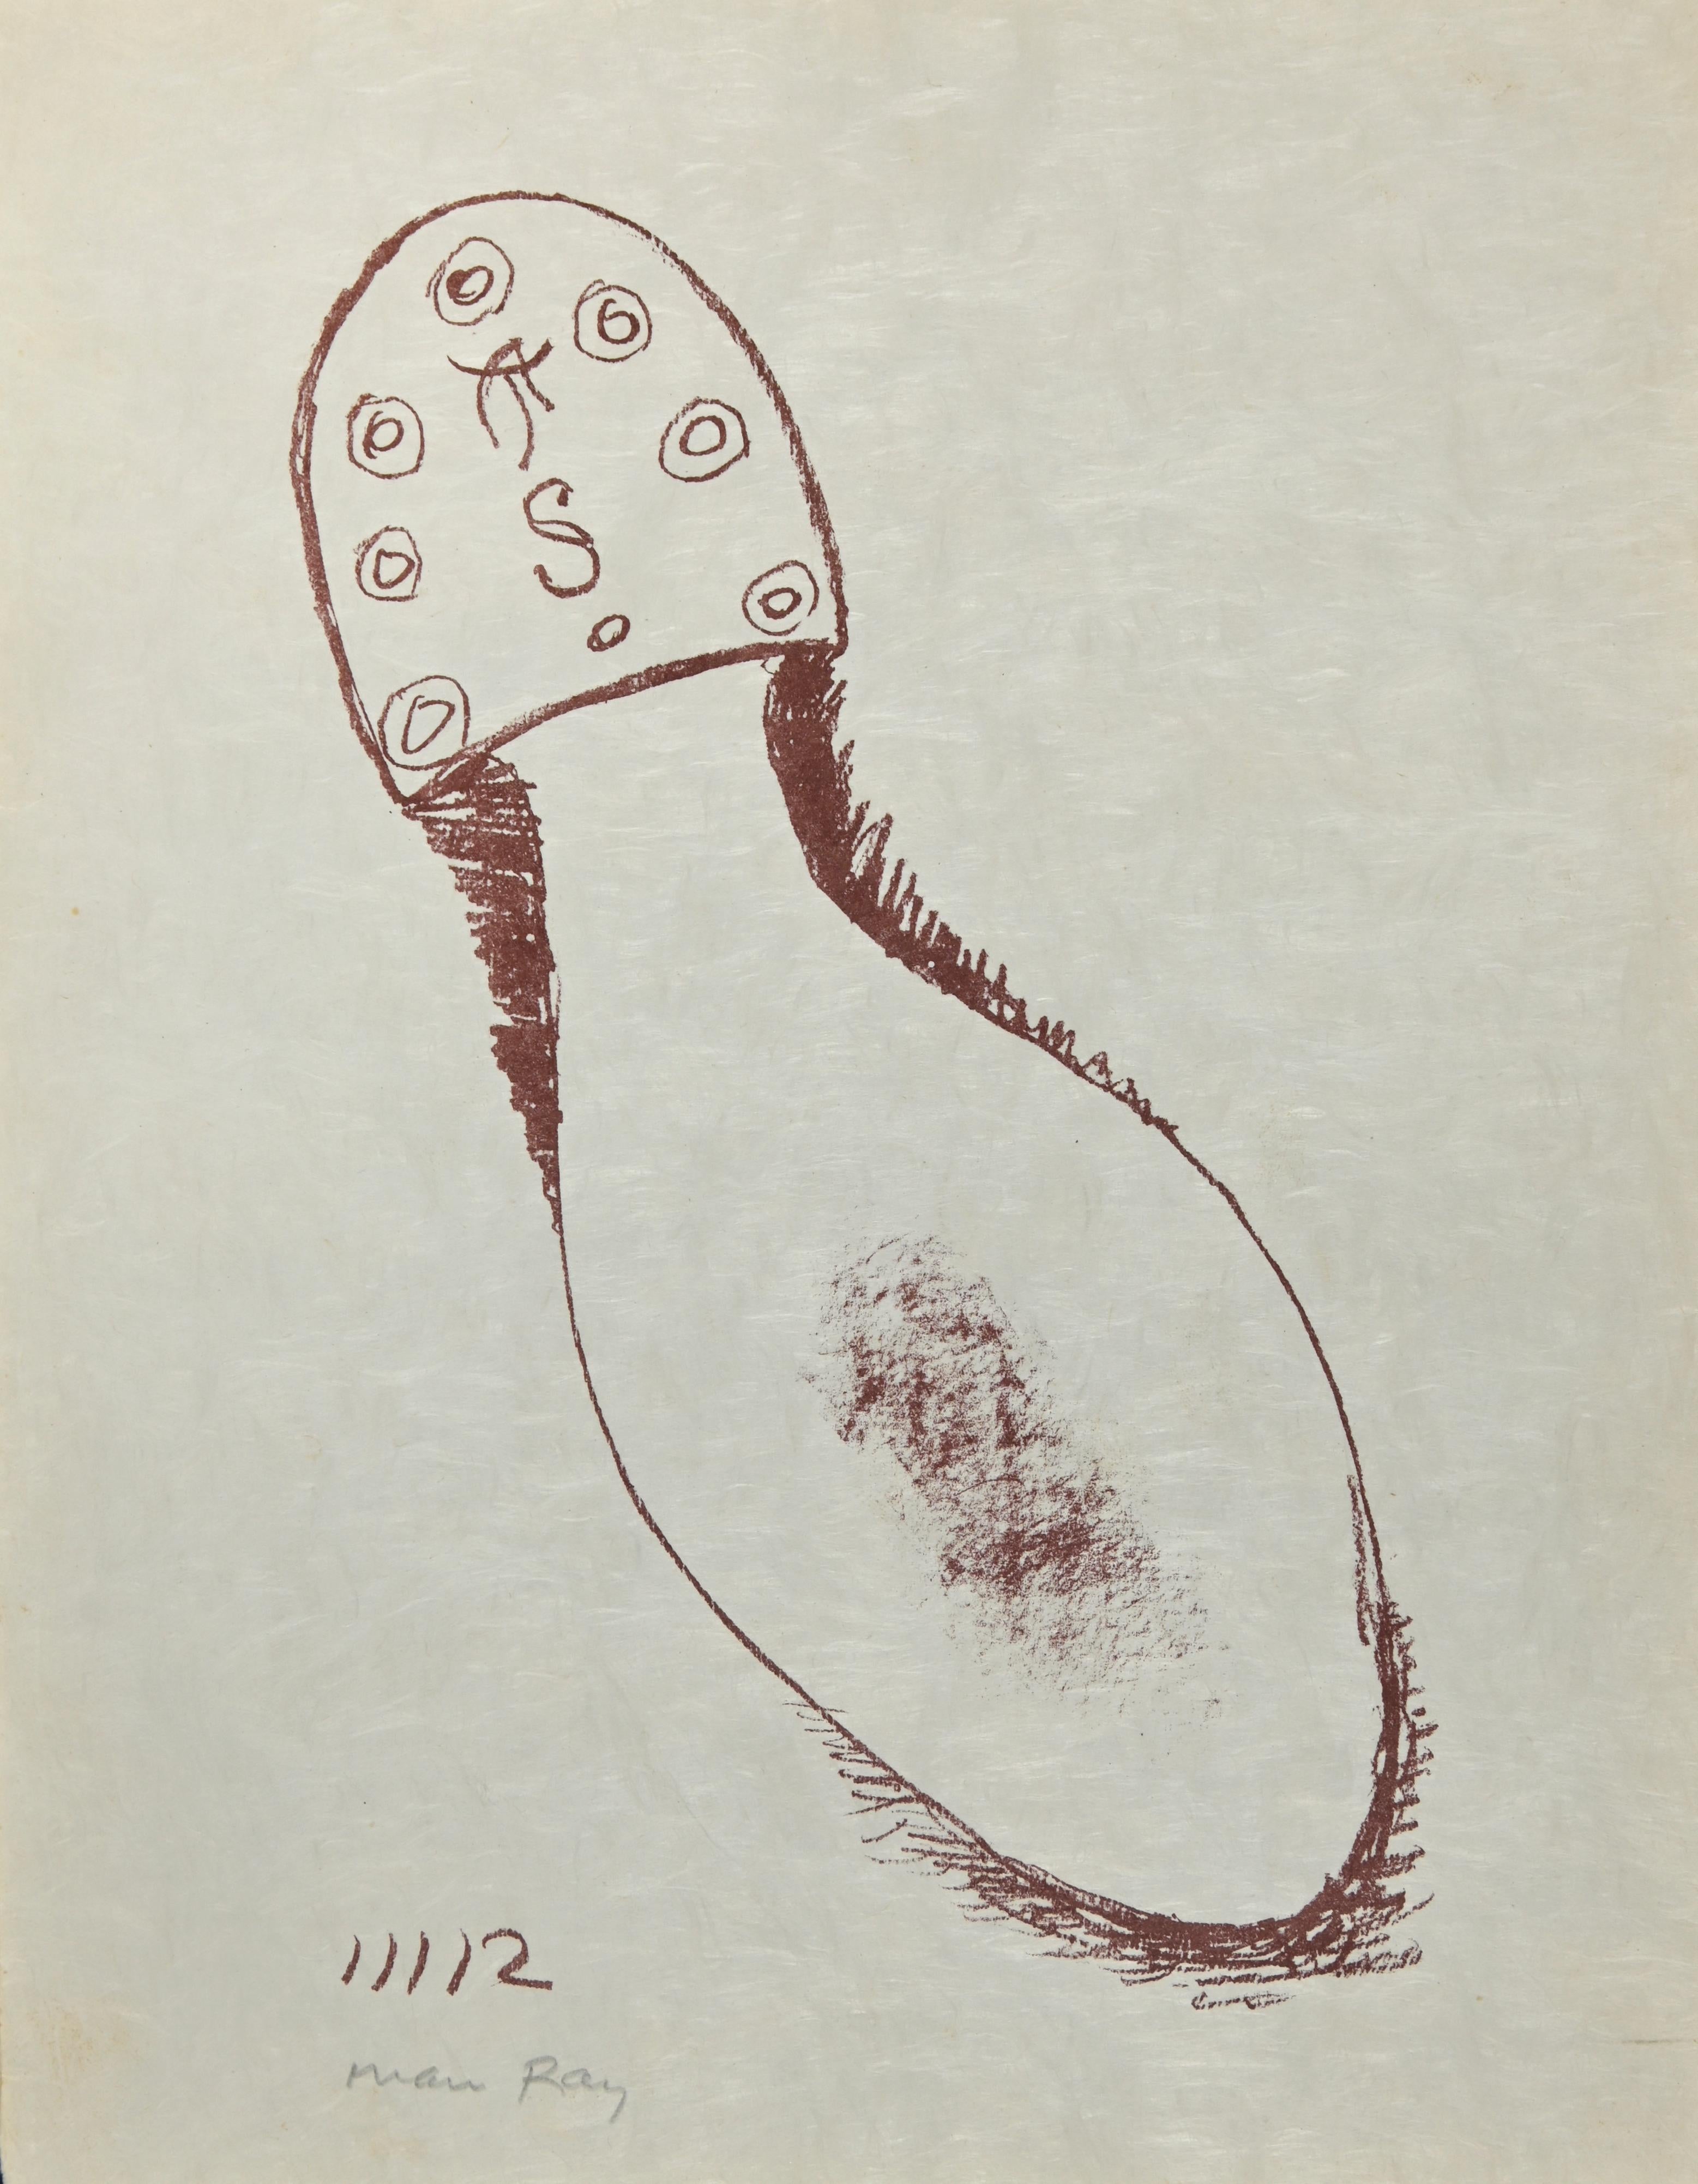 The Absolute Real ist eine Lithographie von Man Ray aus dem Jahr 1964.

Vom Künstler mit Bleistift handschriftlich signiert. 

Lithographie in roter Tinte, 1964. Die von Schwarz herausgegebene Lithografie ist Teil der Suite, die zusammen mit